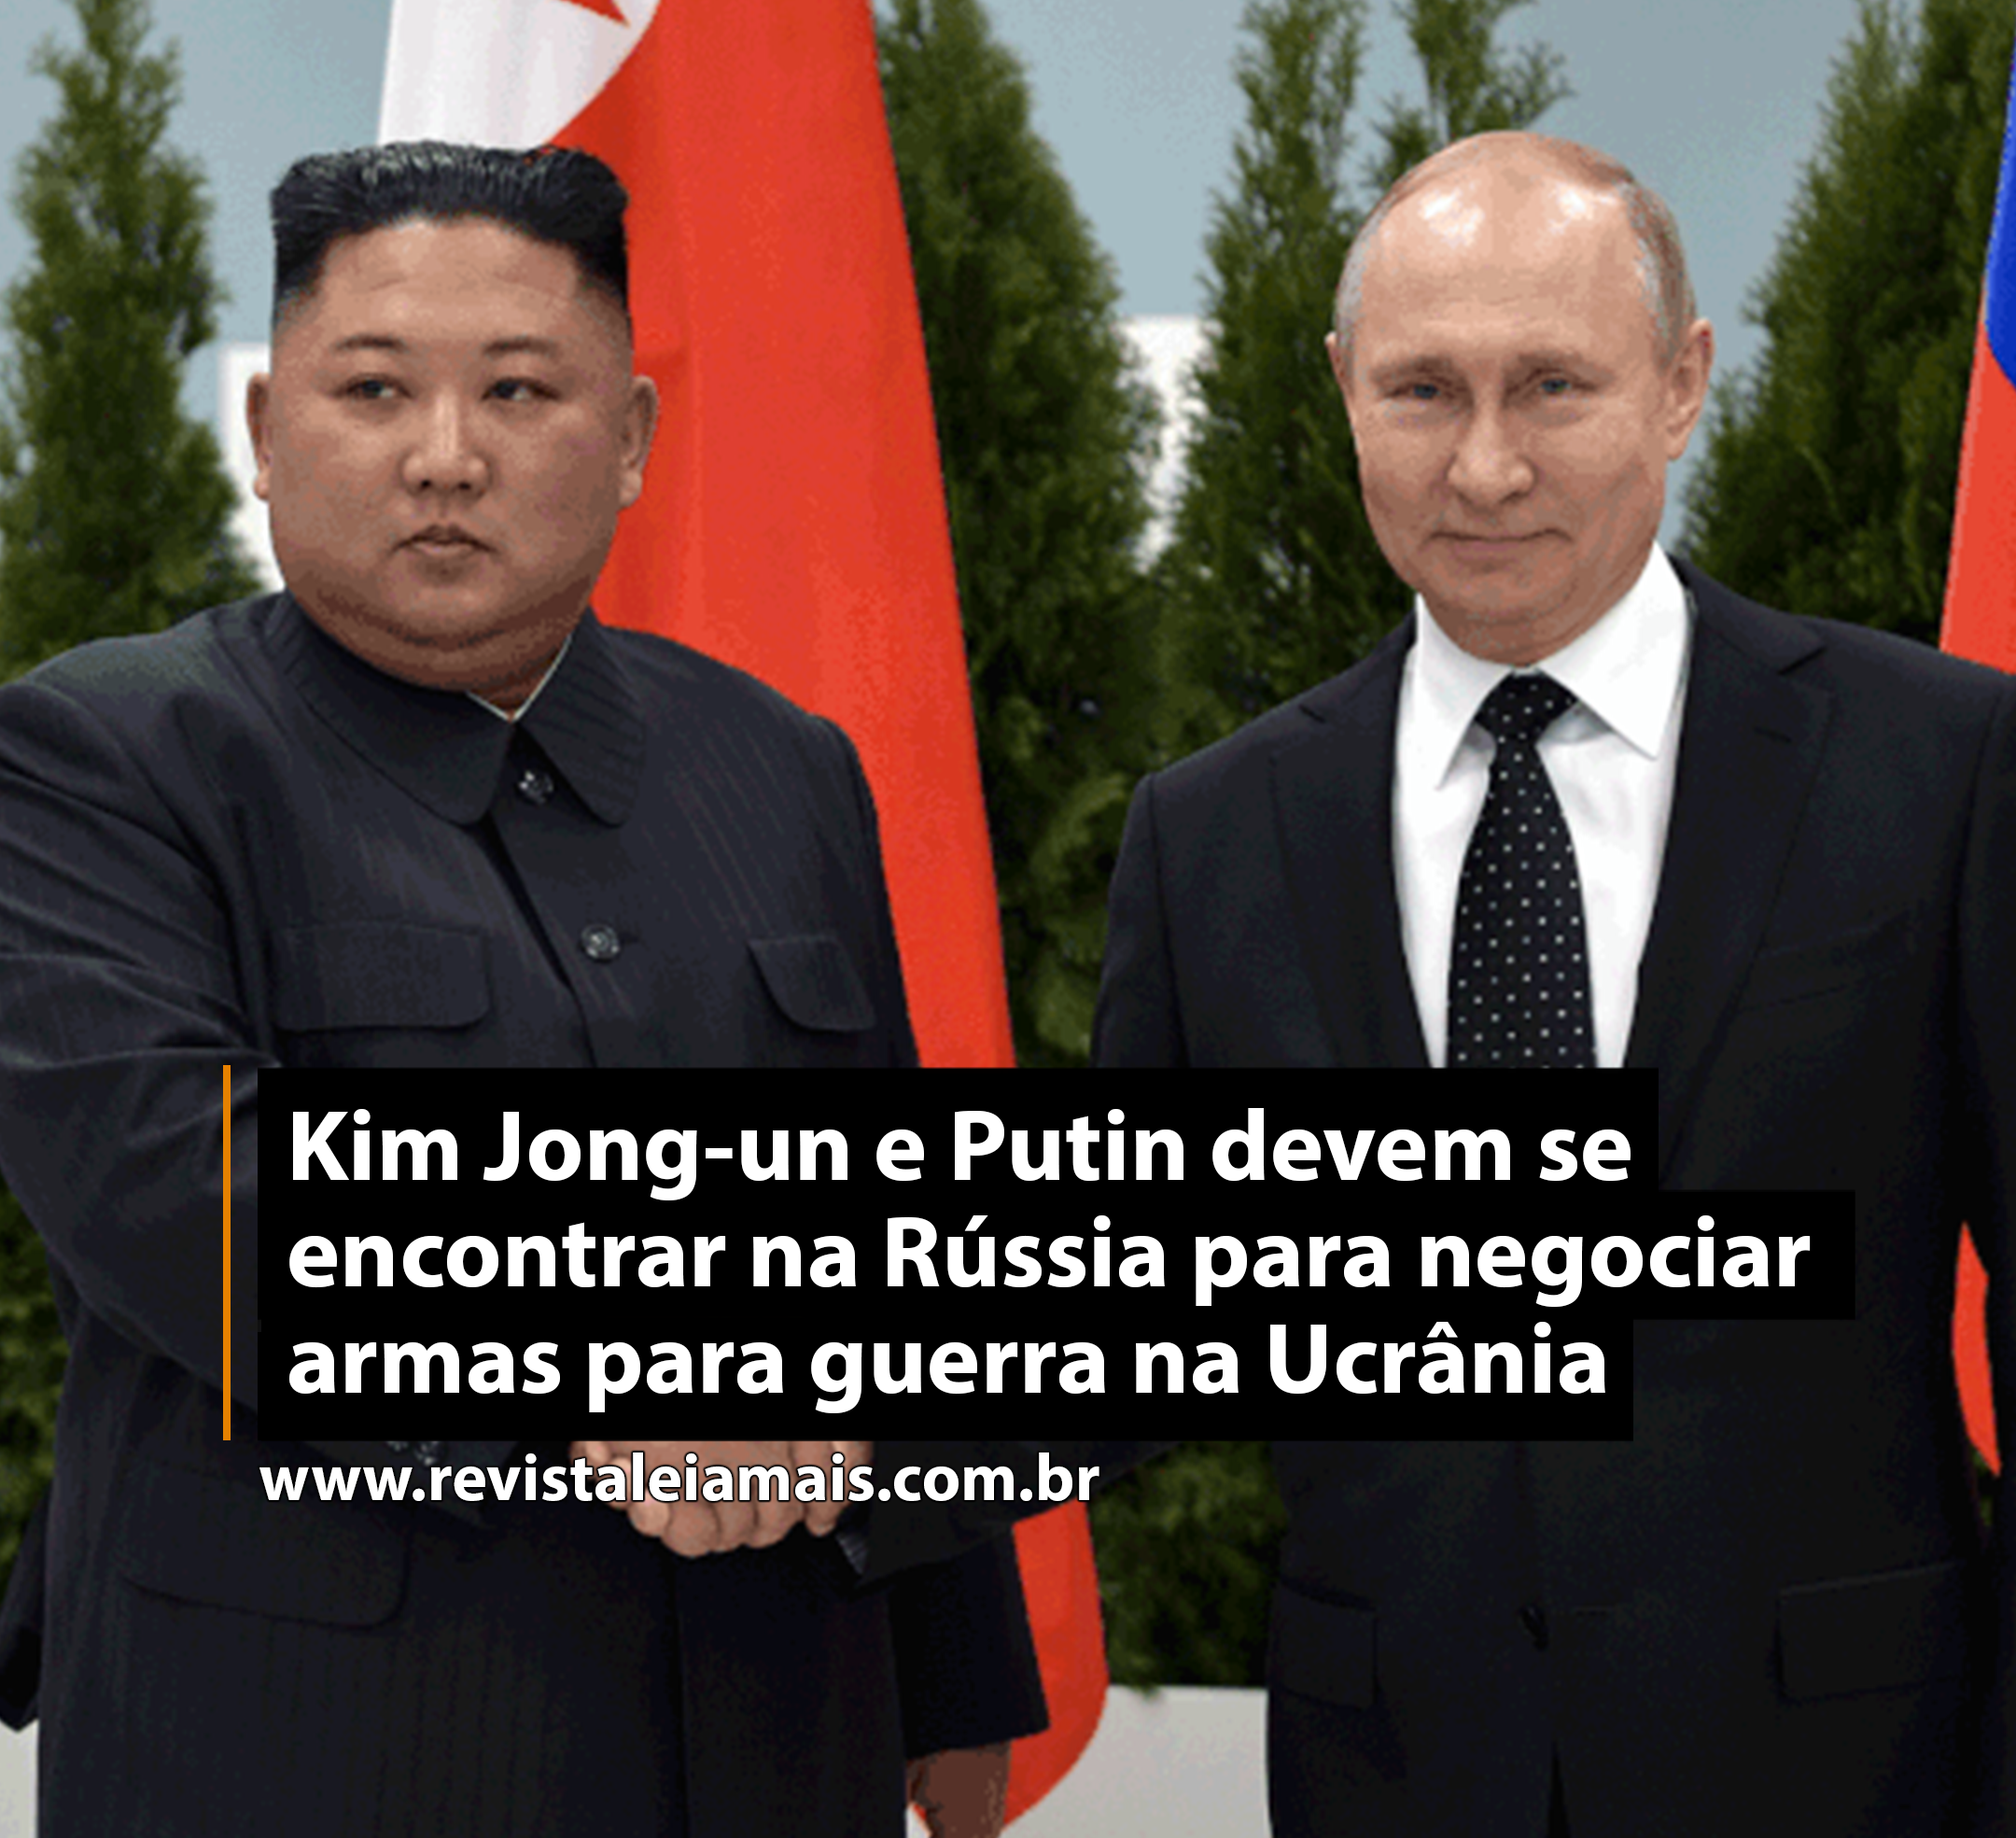 Kim Jong-un e Putin devem se encontrar na Rússia para negociar armas para guerra na Ucrânia